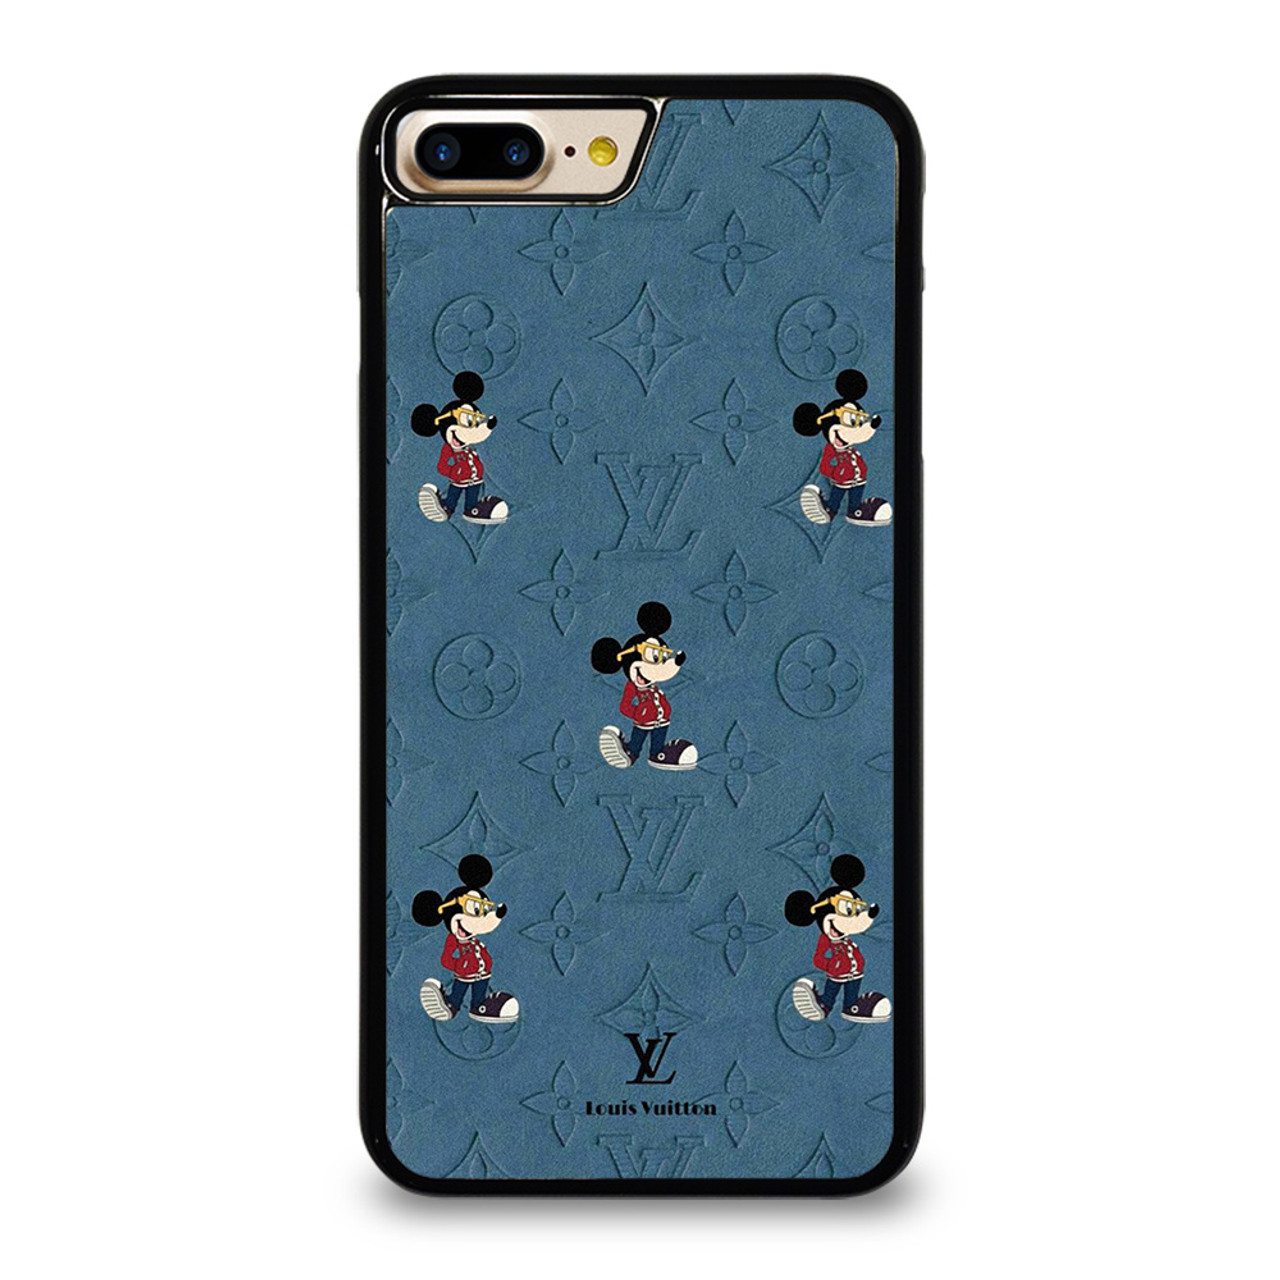 iPhone 8 Plus (Louis Vuitton case)